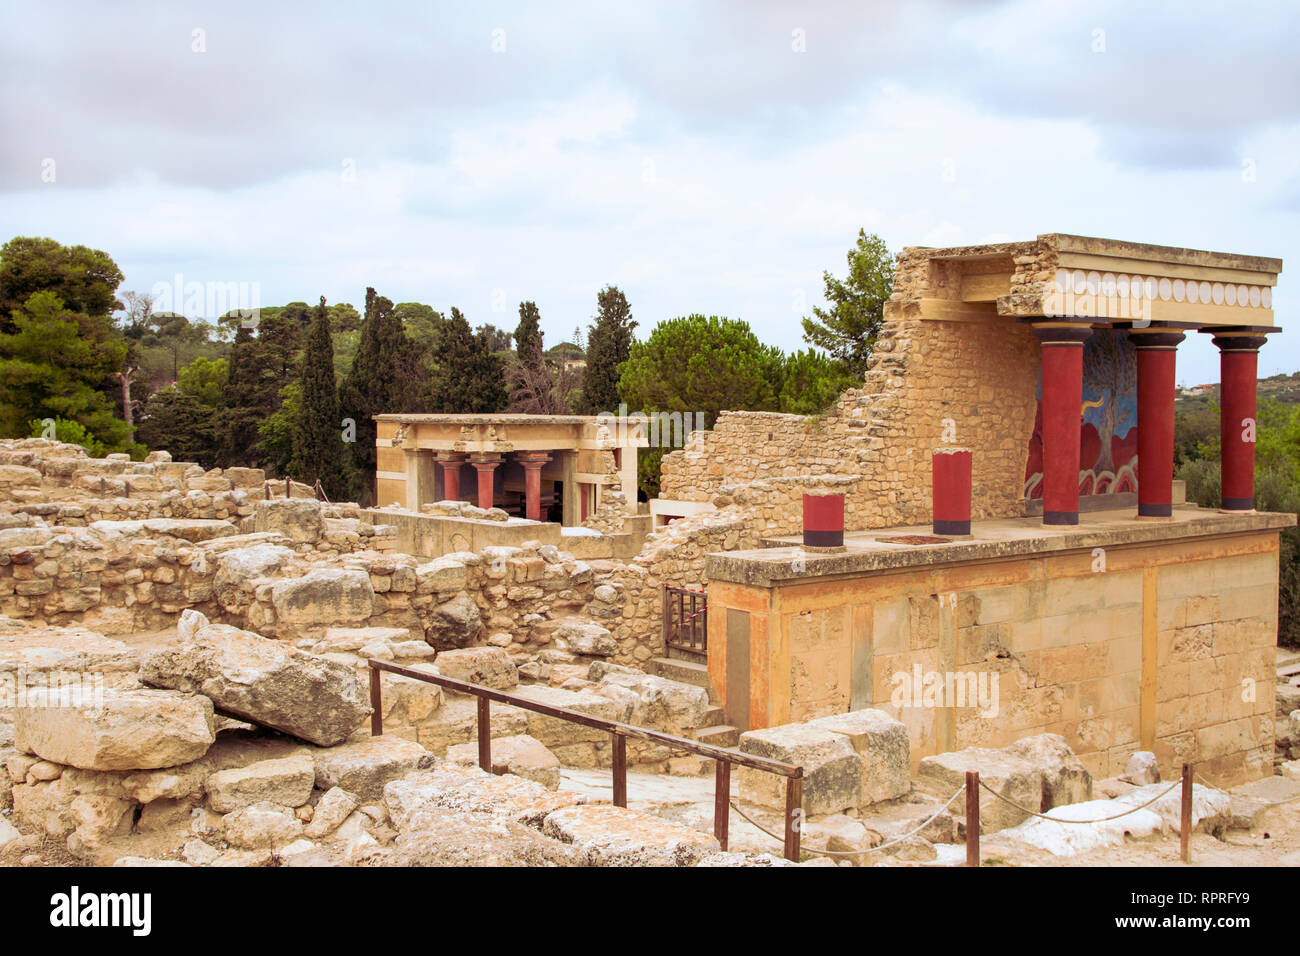 Vue sur colonnes rouges et les ruines de Knossos Minoan Palace. Plan d'ensemble. Pas de personnes. Héraklion, Crète, Grèce. Banque D'Images